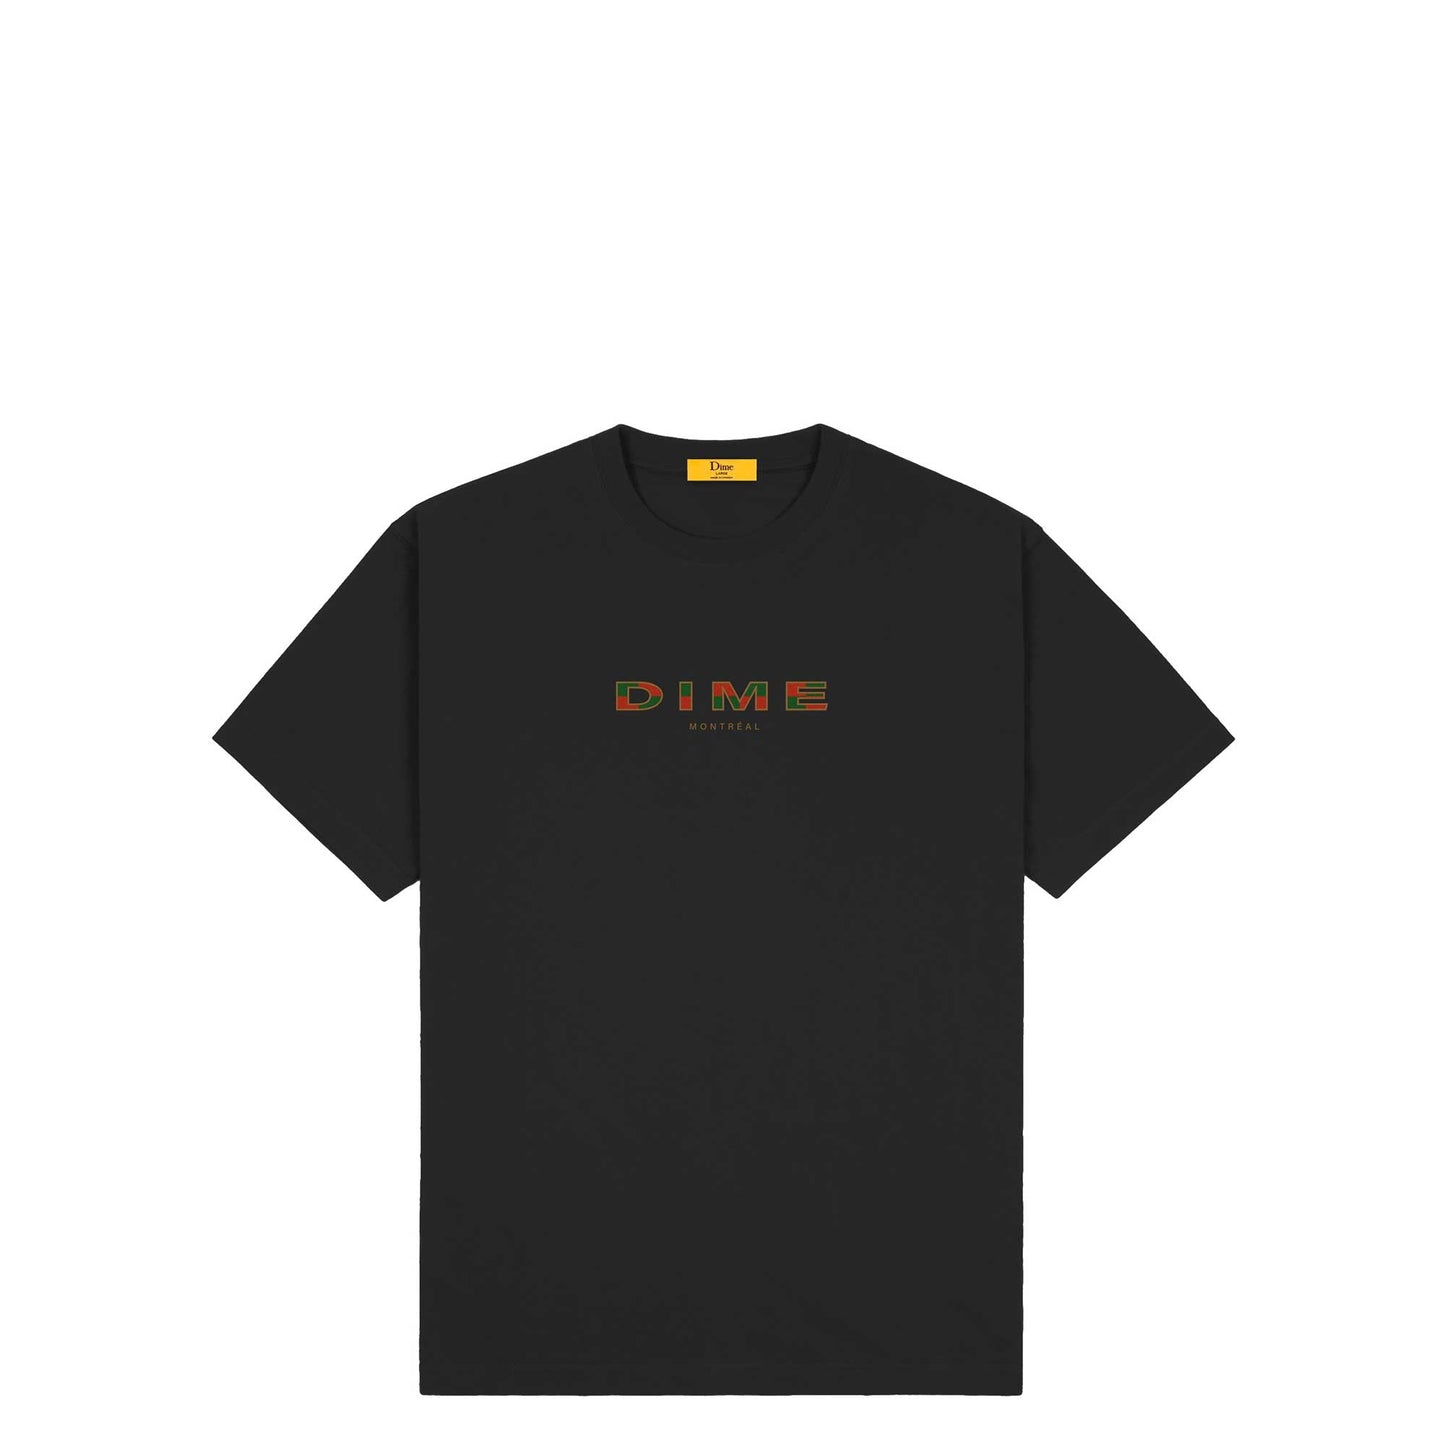 Dime Block Font T-Shirt, black - Tiki Room Skateboards - 1